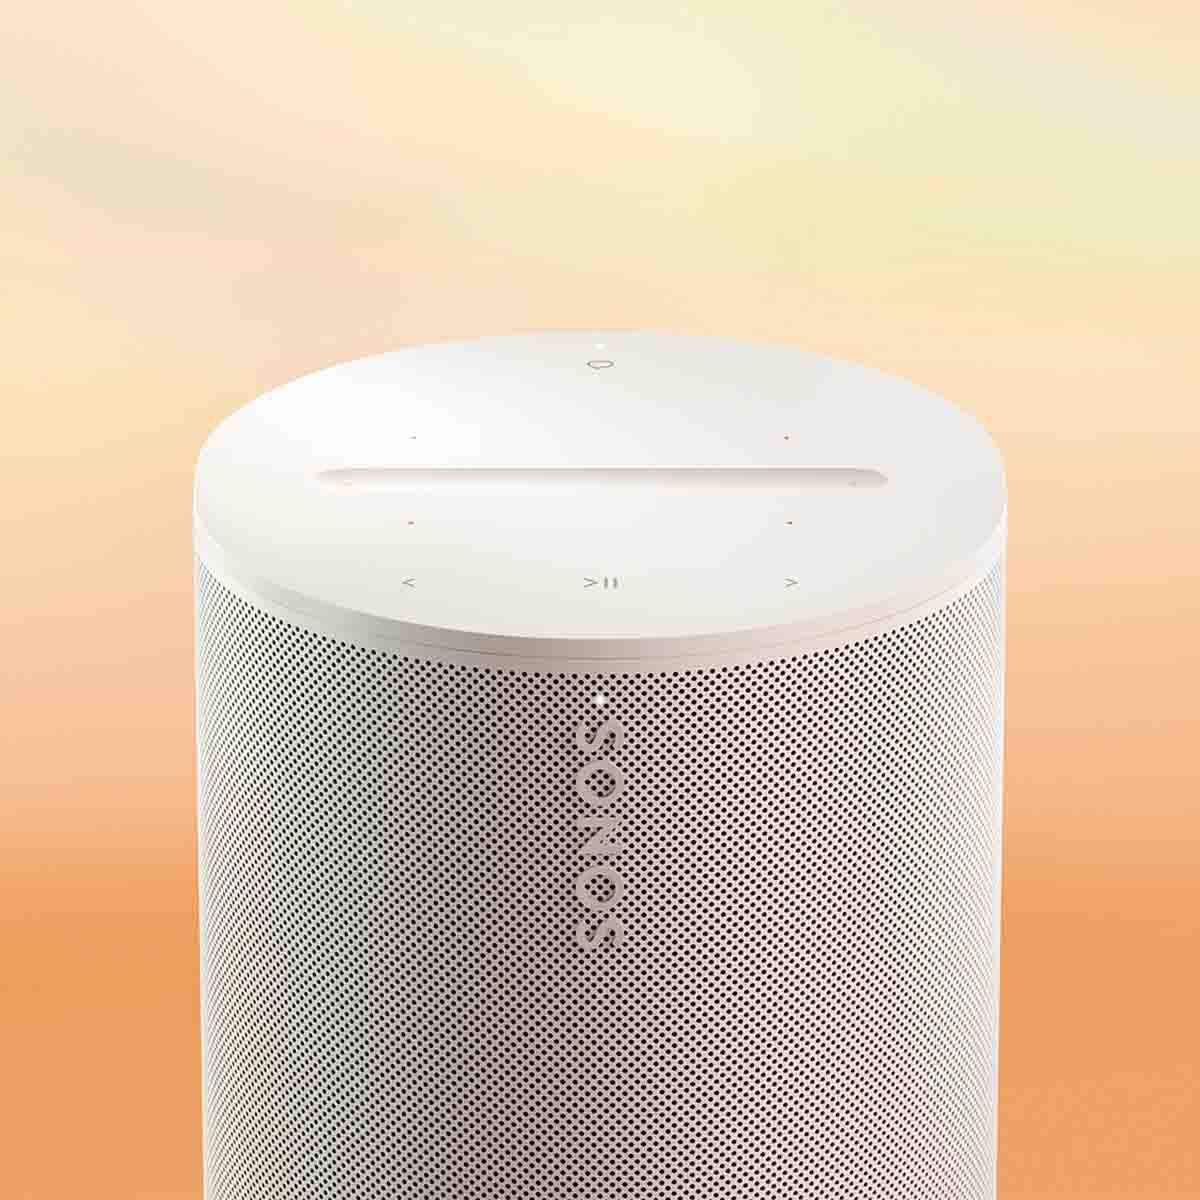 Sonos Era 100 Smart Speaker - White - angled top view view on tie-die background